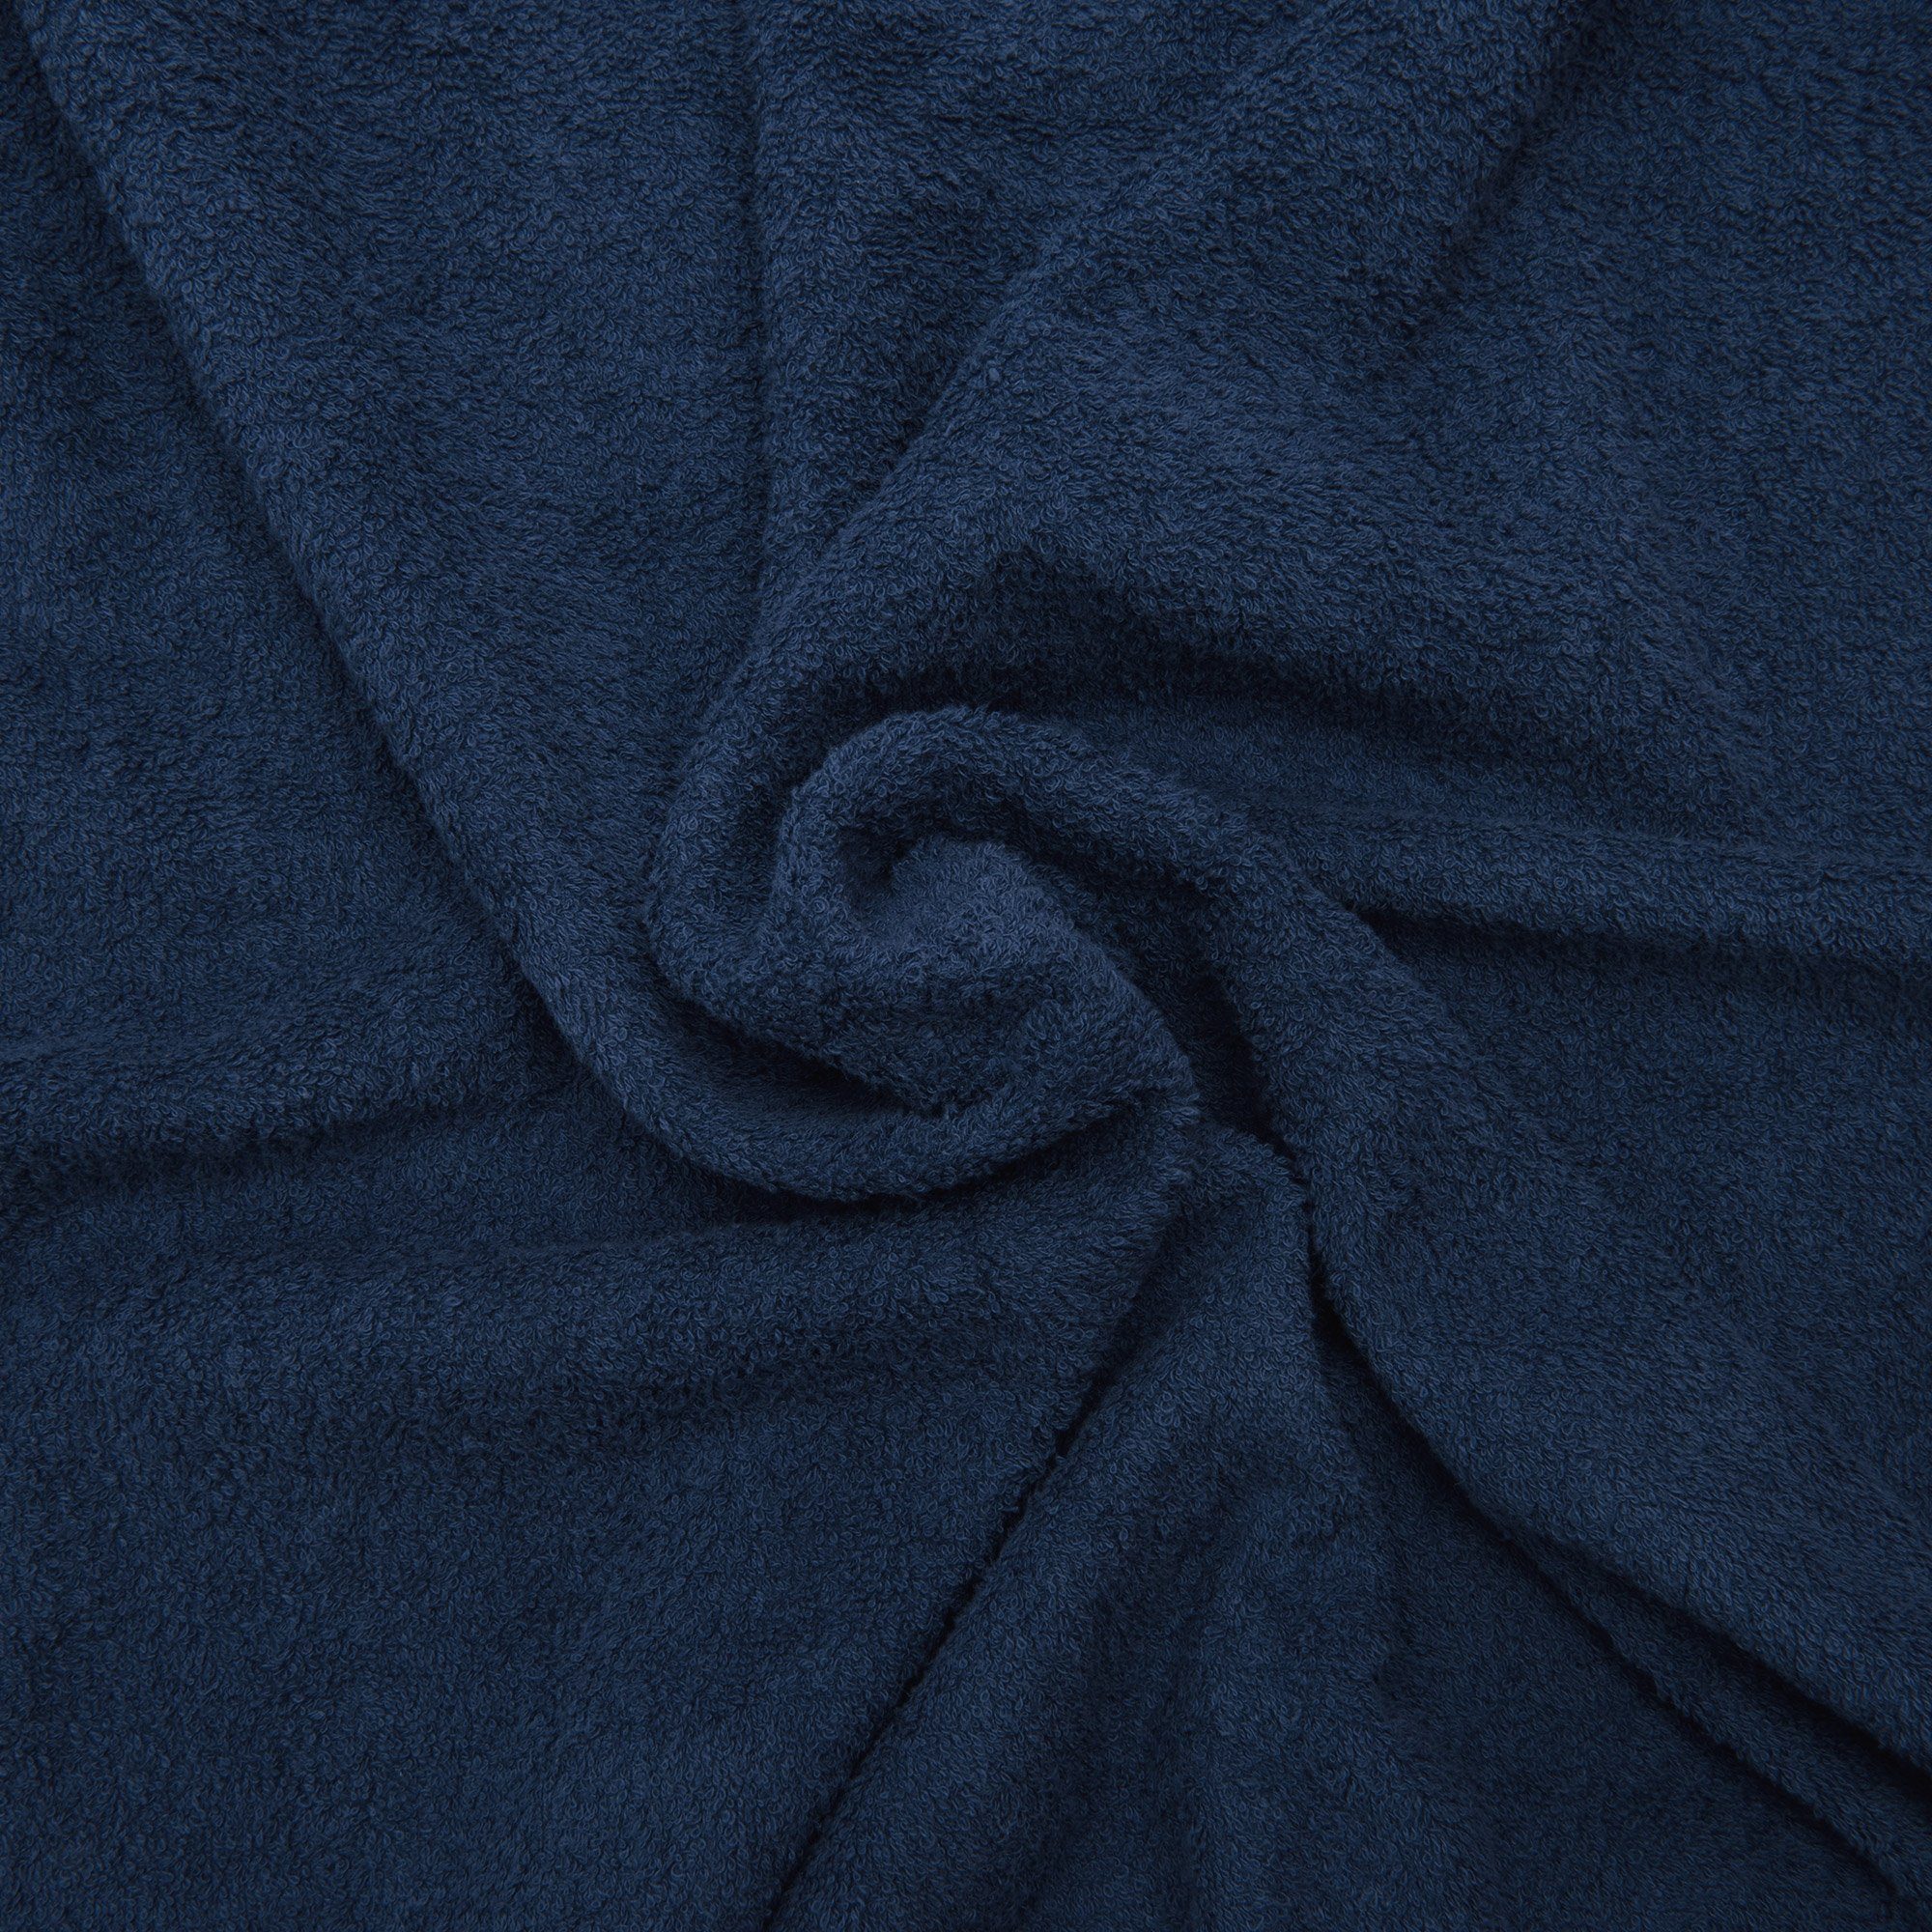 Baumwolle , 100% Marbella, Dunkelblau Handtuch für Beautissu 200x70cm Sonnenliege